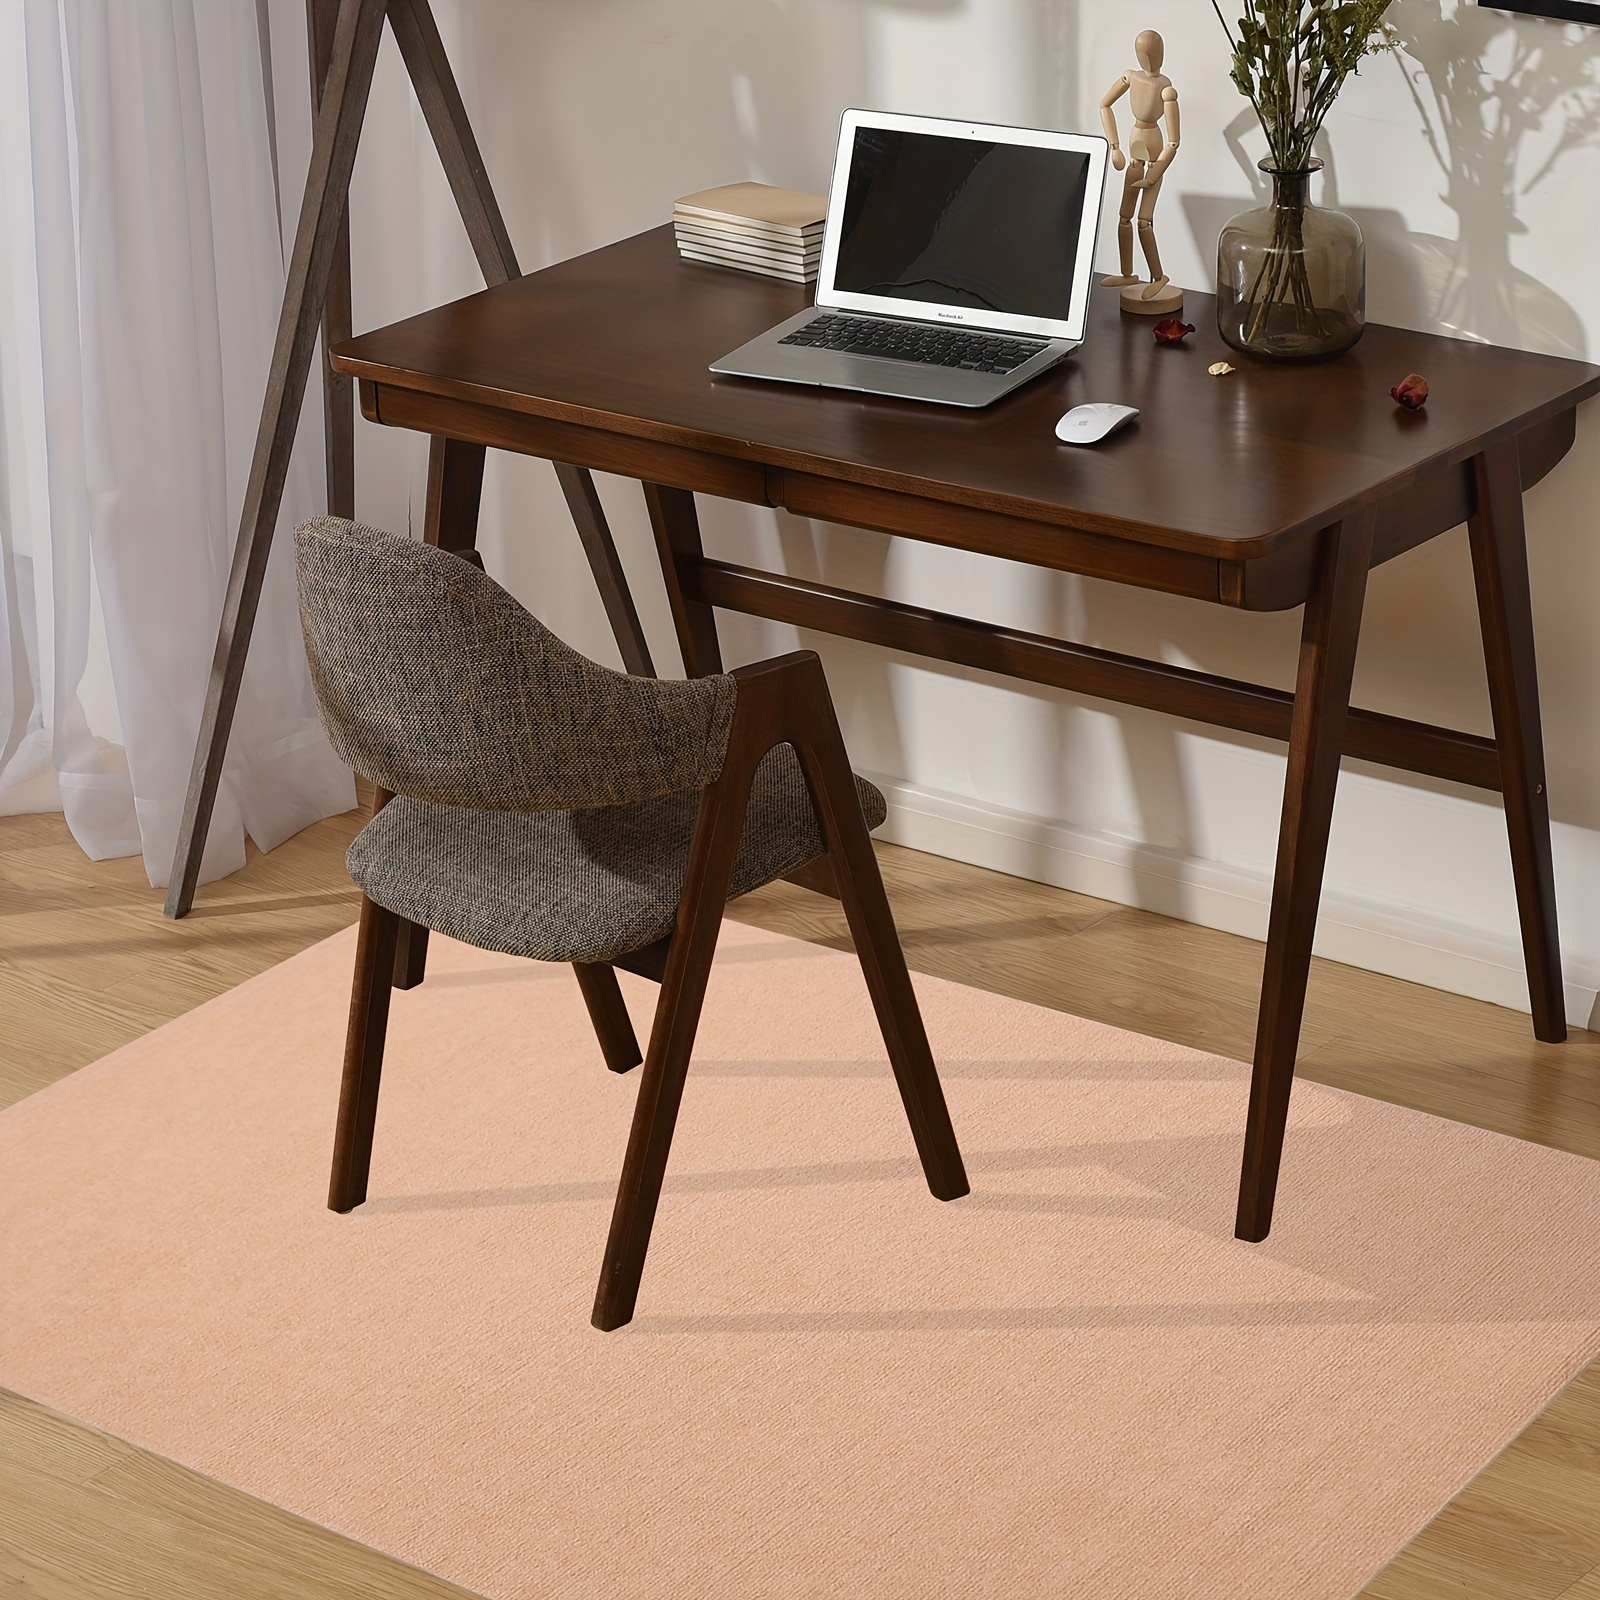 Tapis de chaise Kuyal, tapis de chaise roulante 2 mm pour sol en bois dur,  tapis de protection de sol en PVC transparent pour bureau à domicile (91,4  x 121,9 cm) 